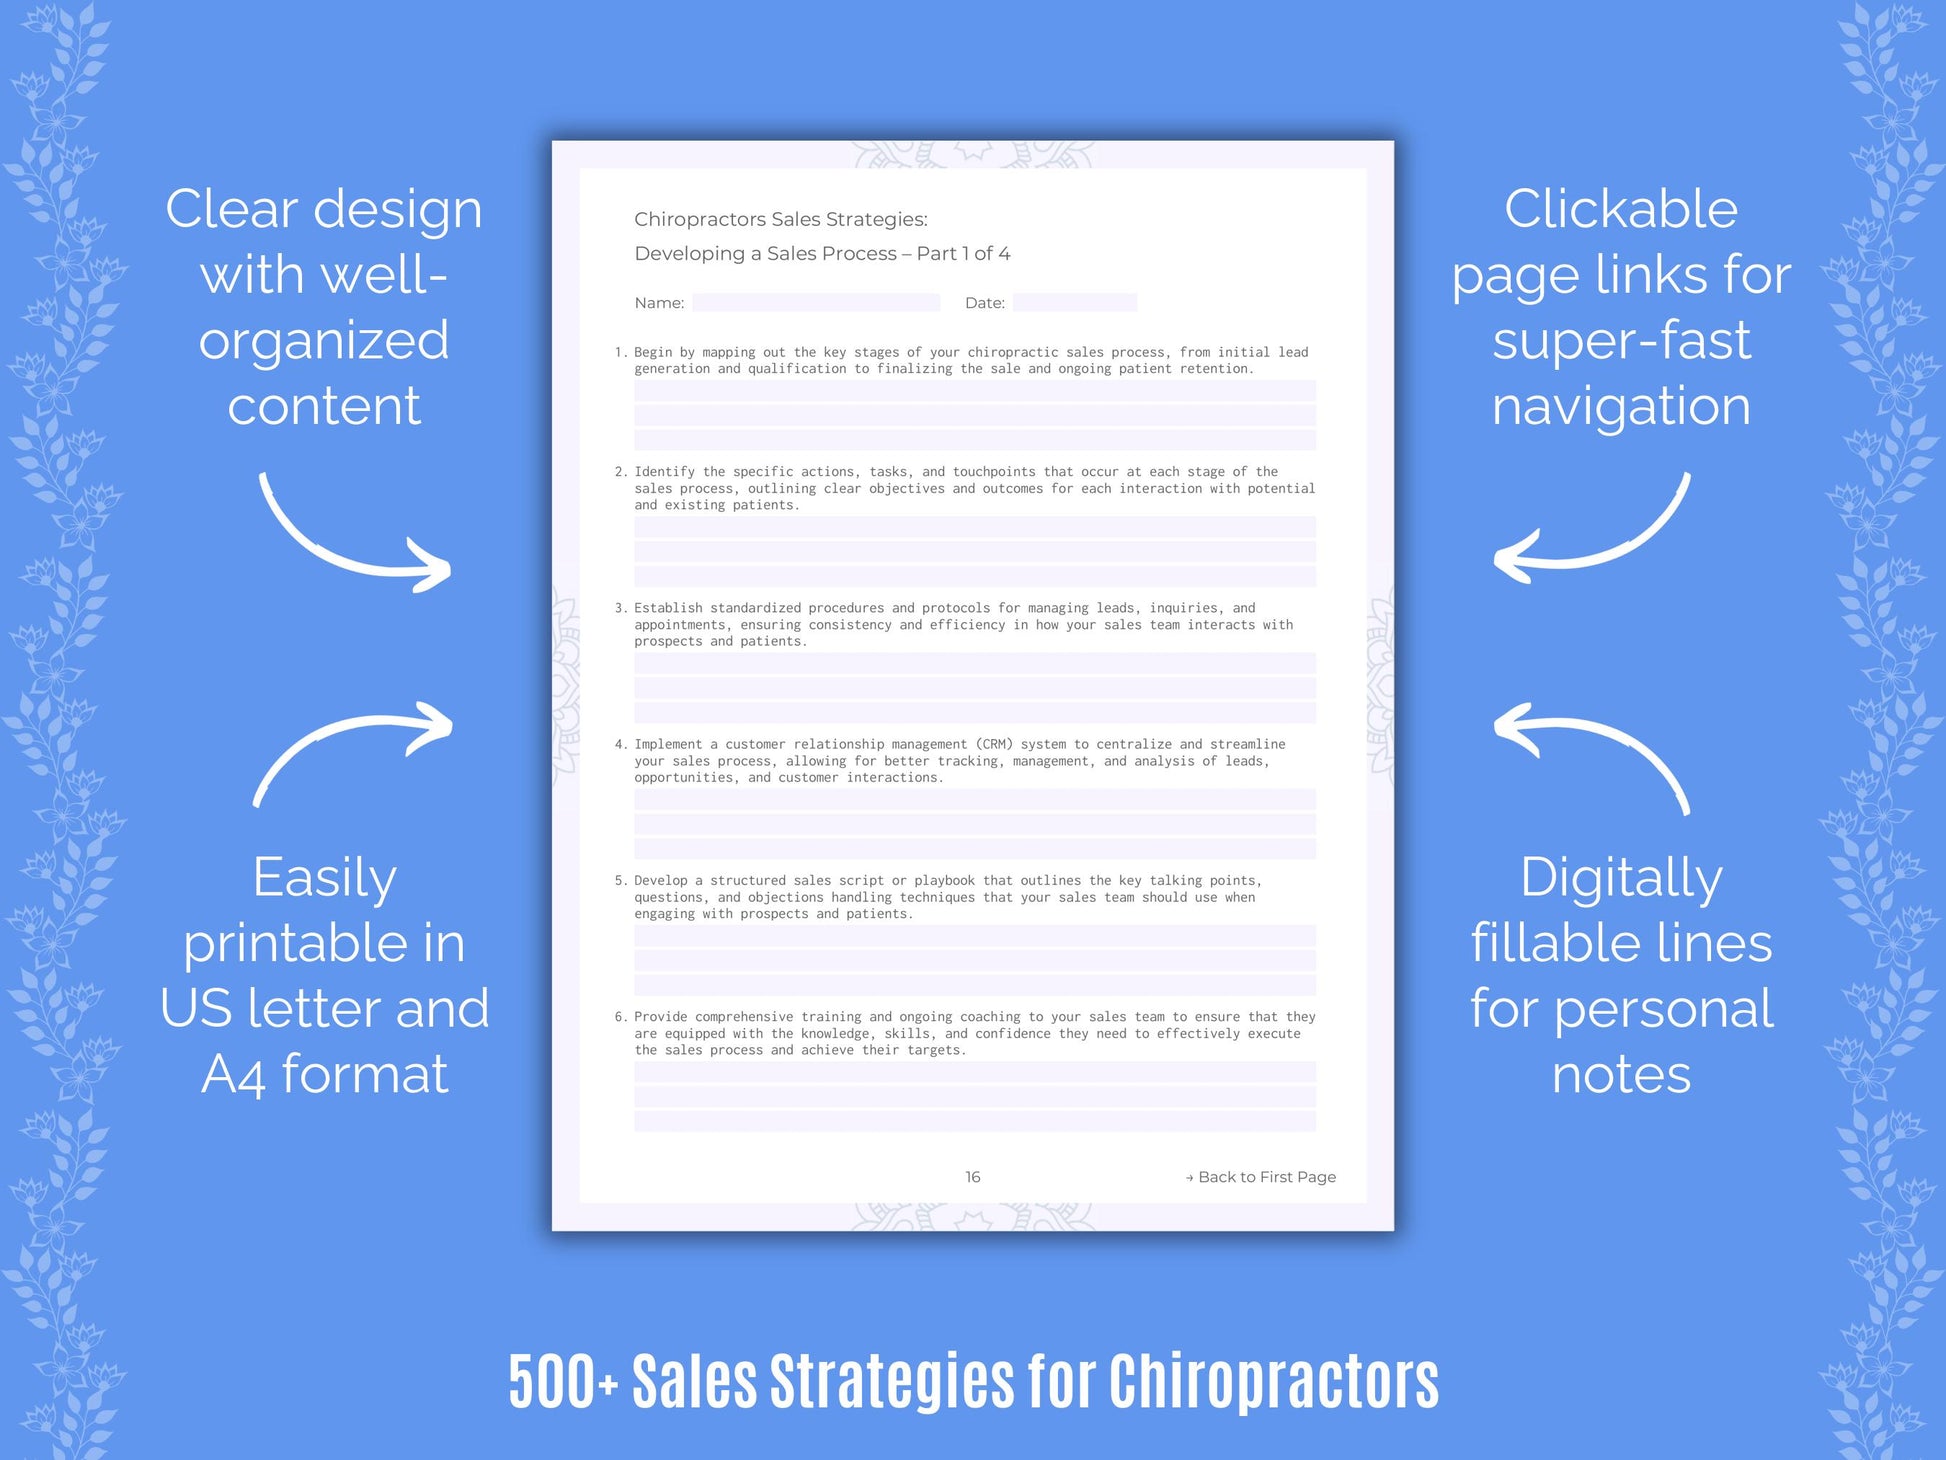 Chiropractors Sales Strategies Resource